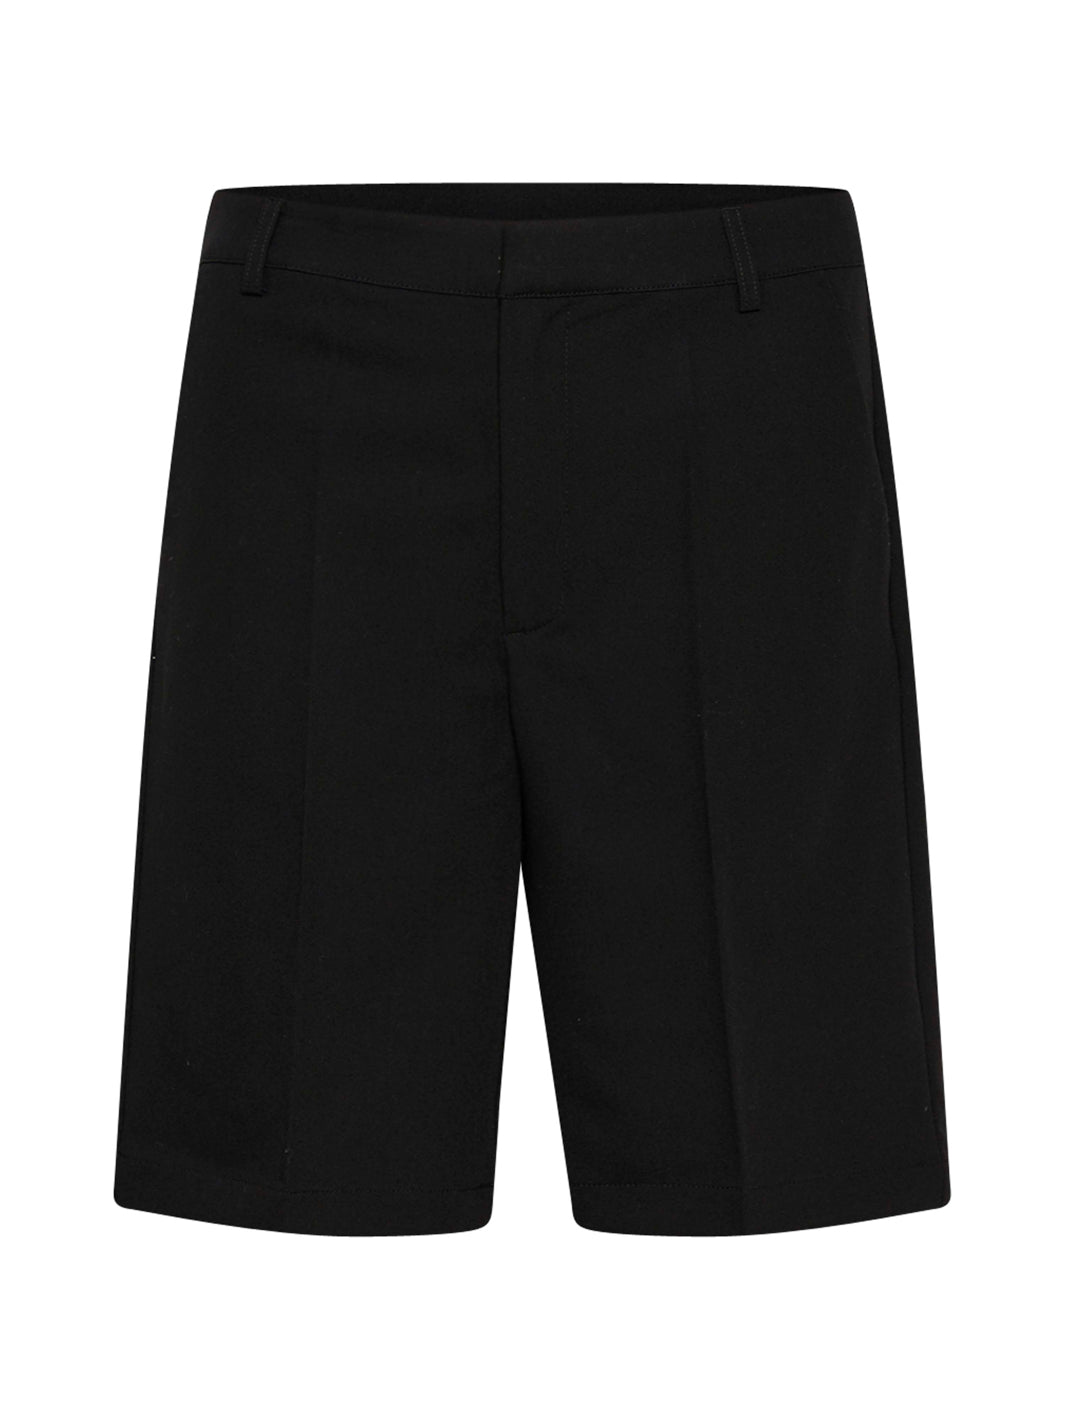 Kaffe KAsakura zipper shorts black deep - Online-Mode